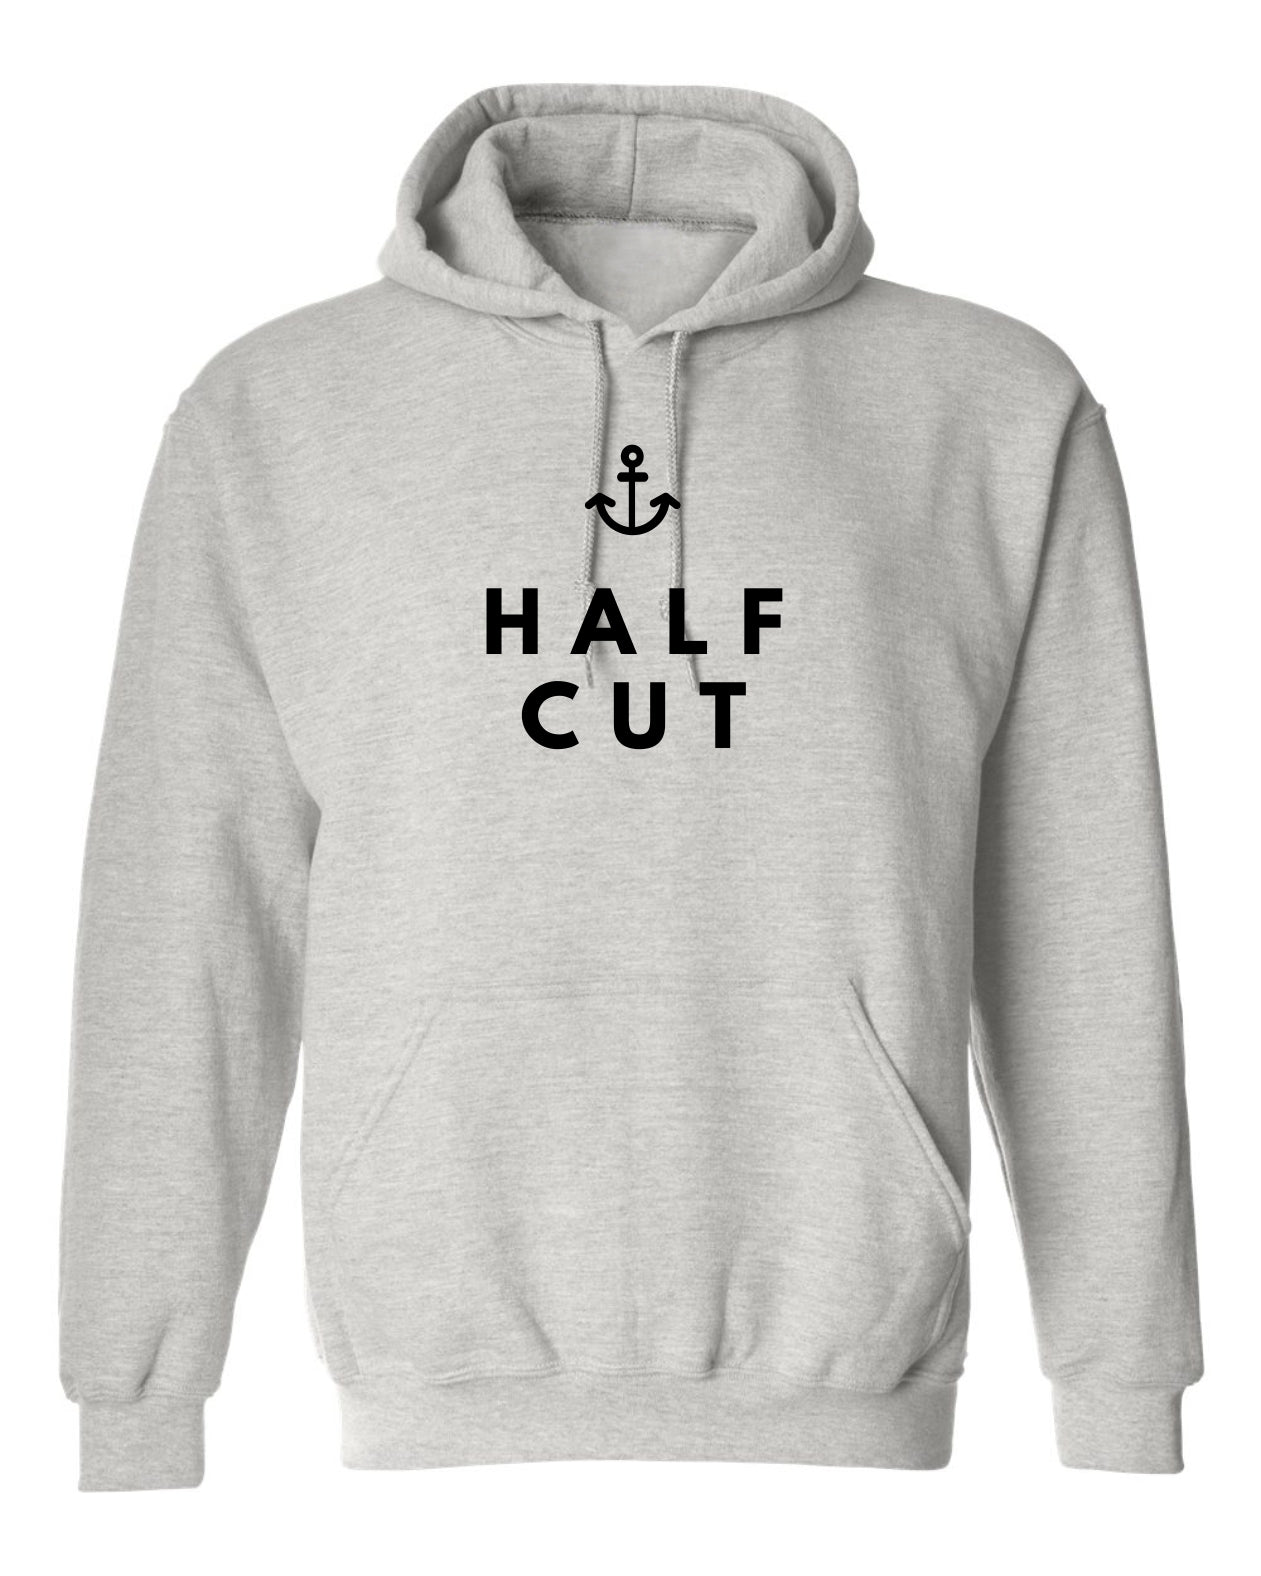 "Half Cut" Unisex Hoodie